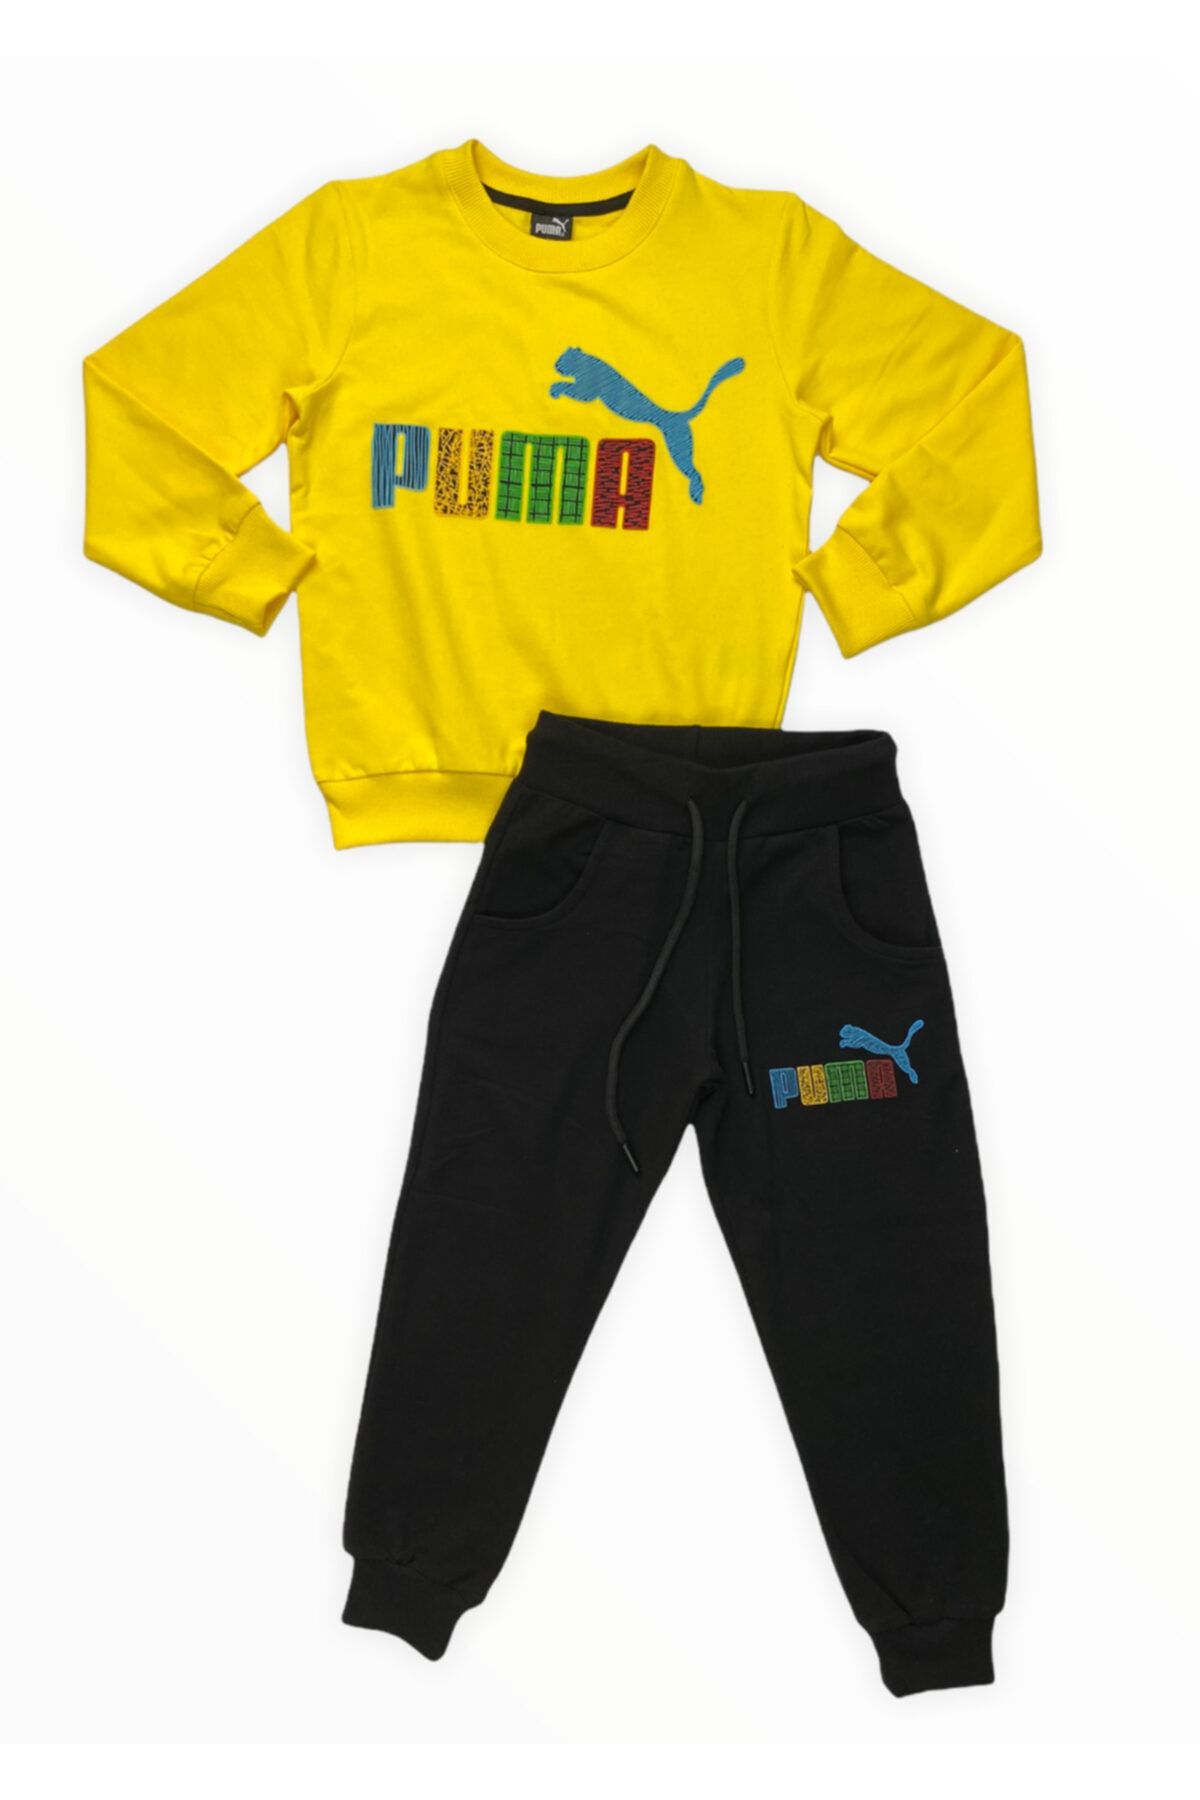 Puma Erkek Çocuk Sarı Eşofman Takımı